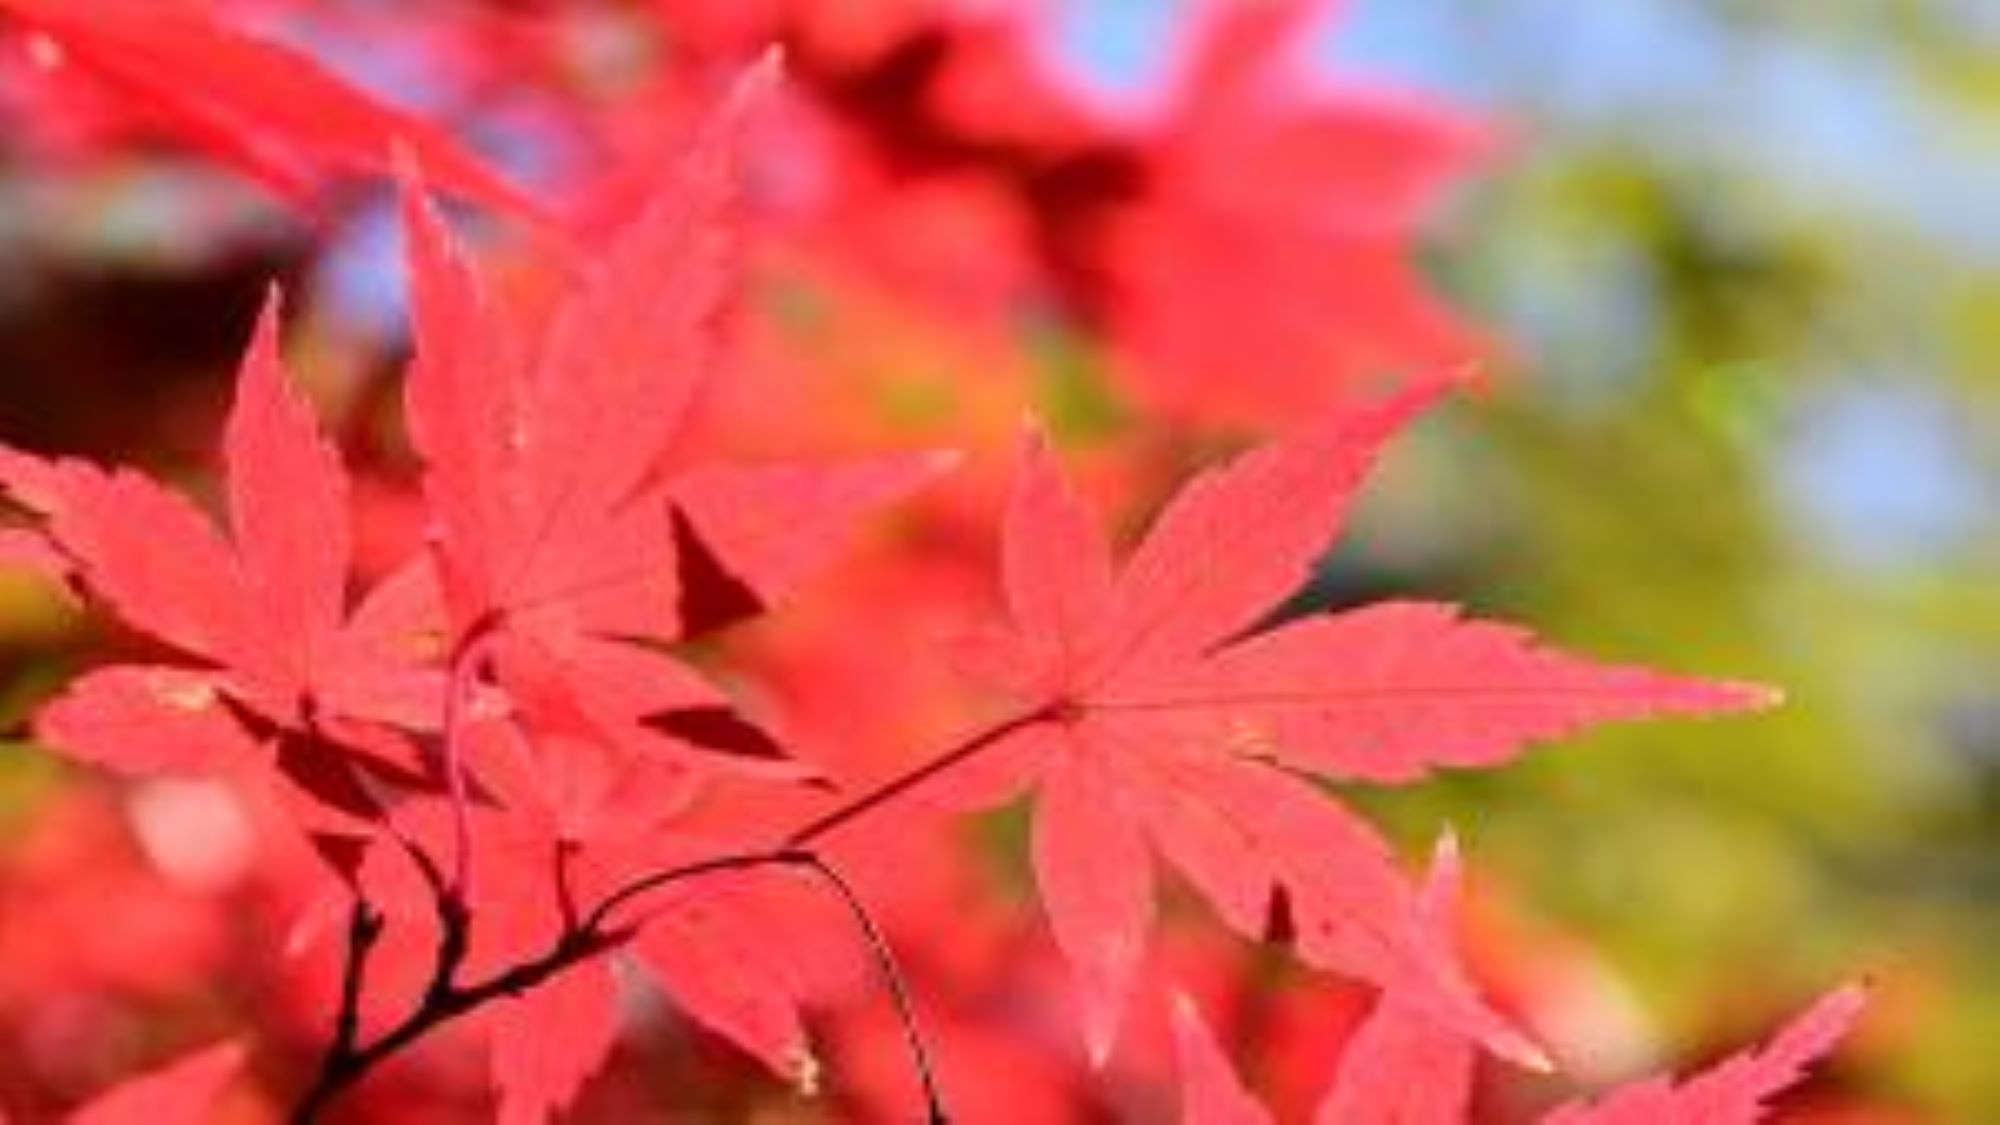 【飯山白山森林公園】春には桜、初夏には新緑、秋には紅葉など、四季折々の風景が楽しめます♪